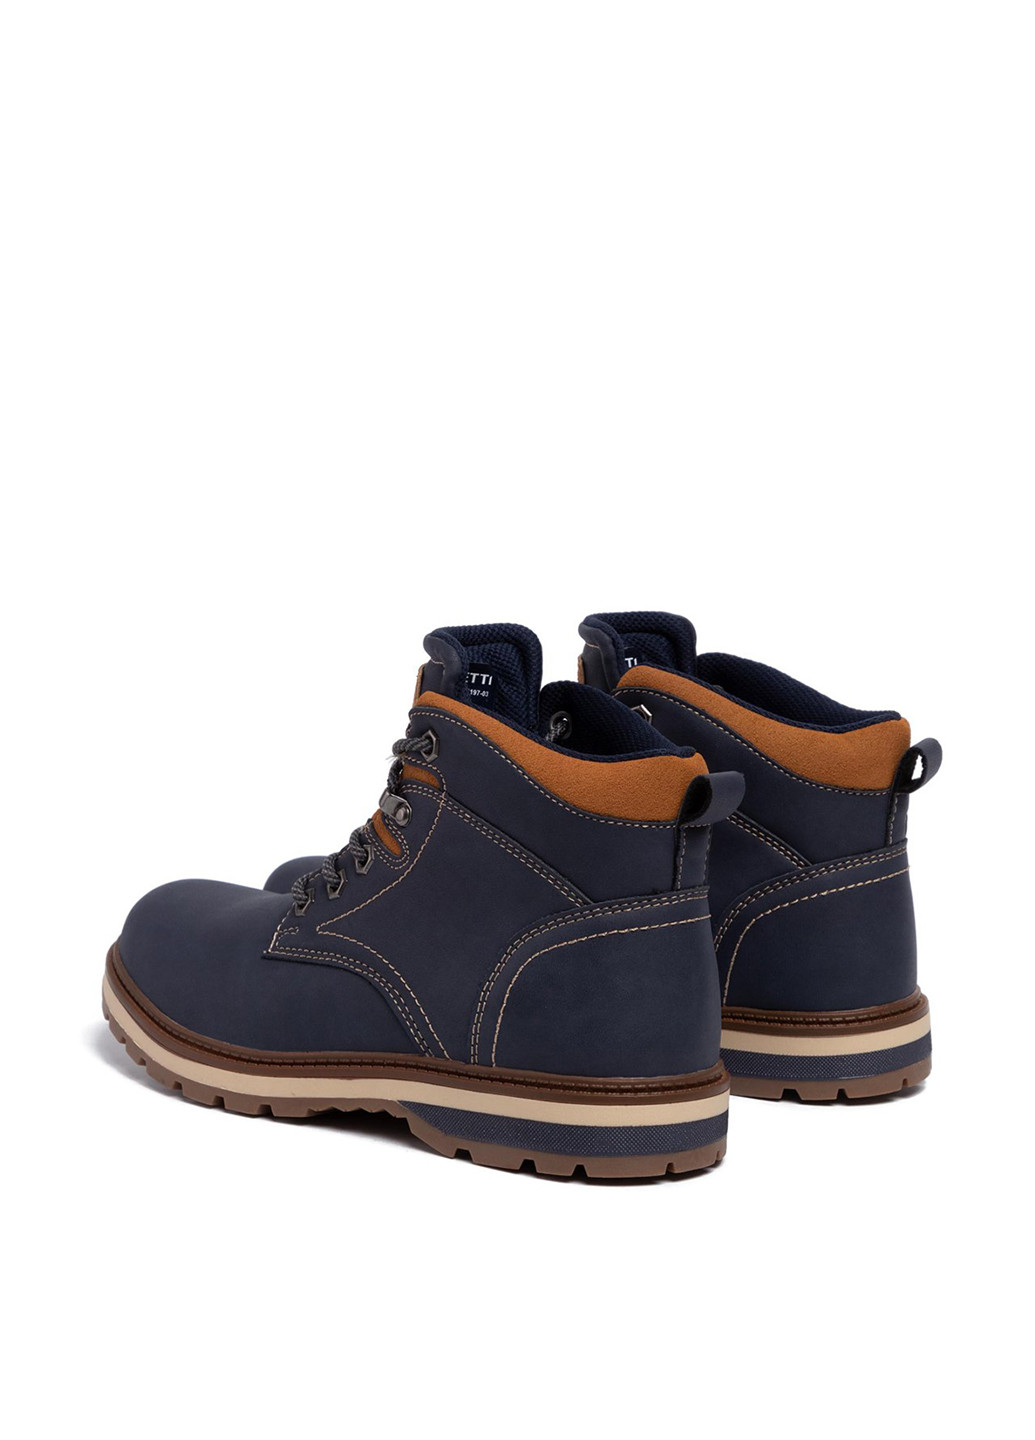 Темно-синие осенние черевики mp07-17197-03 Lanetti